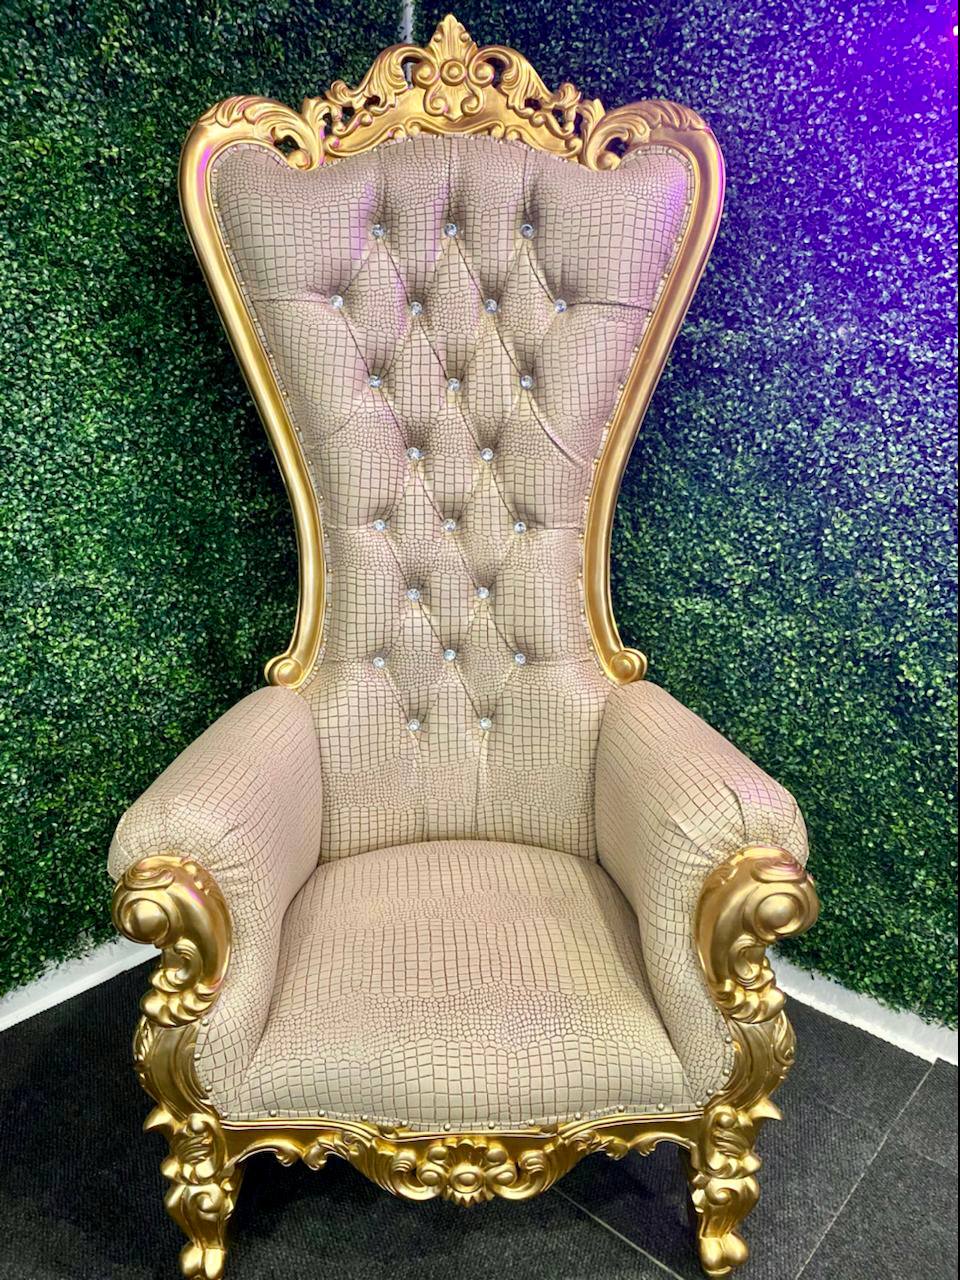  Queen Throne Chair